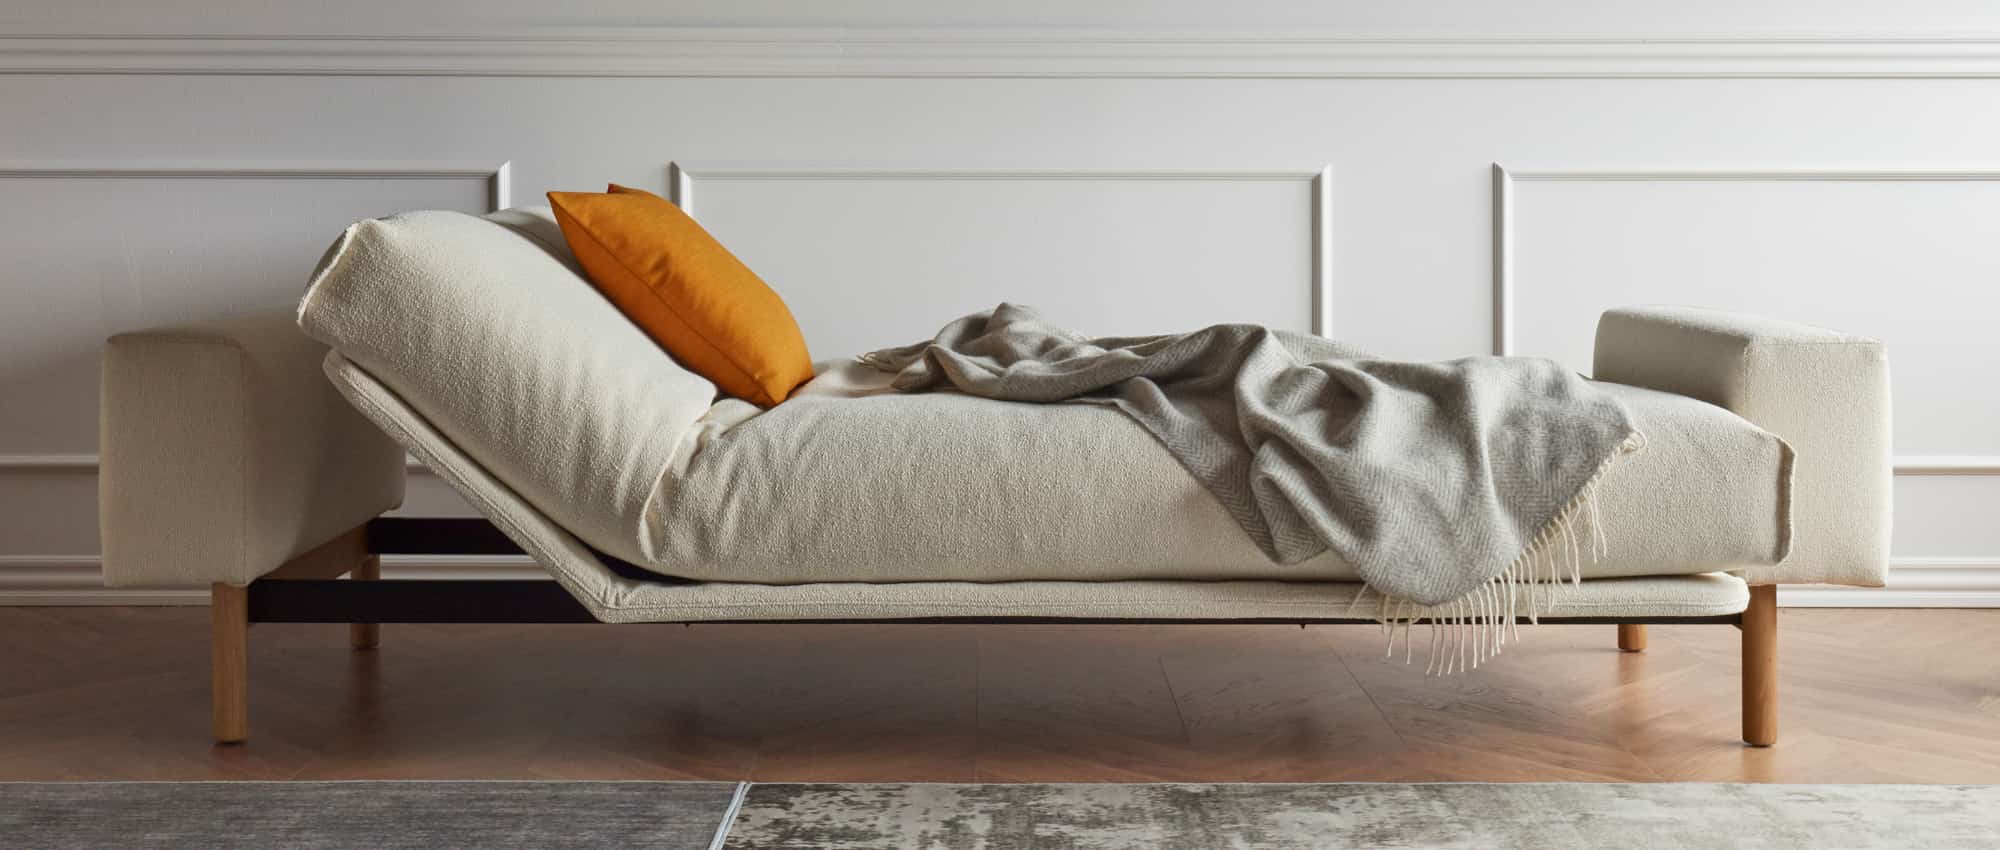 Bettsofa für jeden Tag mit Lattenrost und Matratze, Sofa mit Schlaffunktion, breiten Armlehnen und Holzfüßen in Eiche - 140x200cm